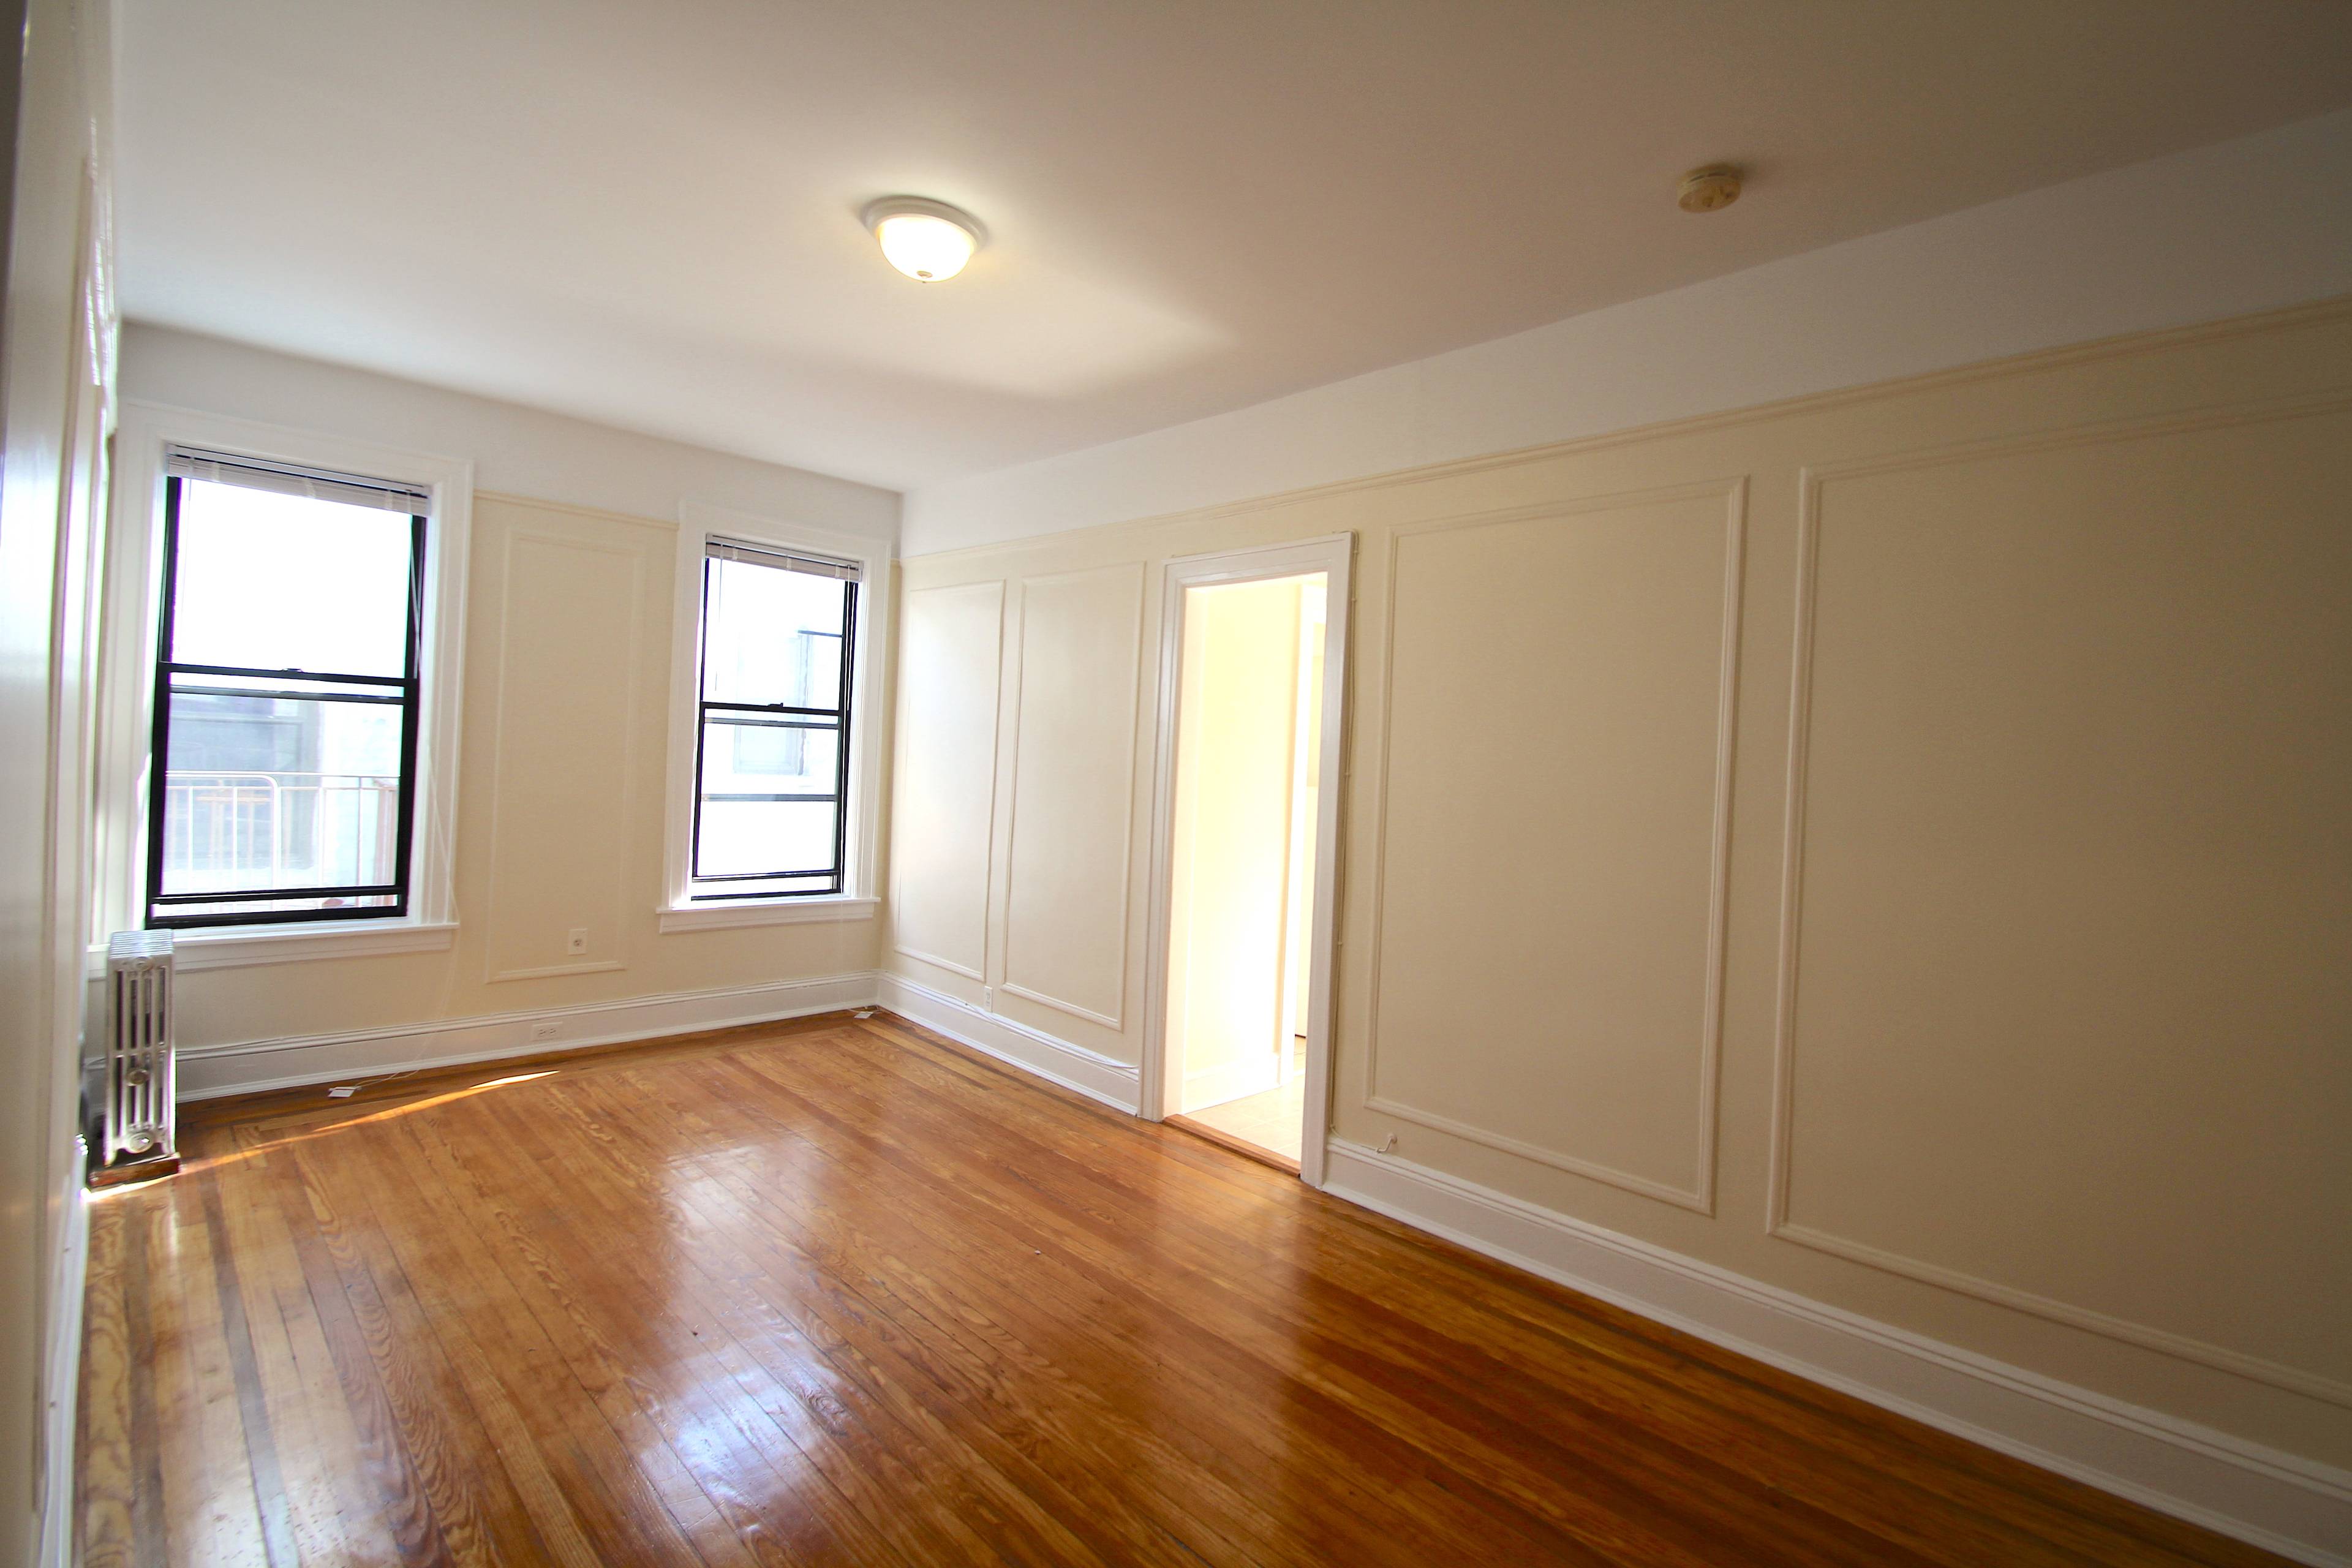 Astoria/LIC: Top Floor Updated Corner 1 Bedroom For Rent w/ Large Living Room